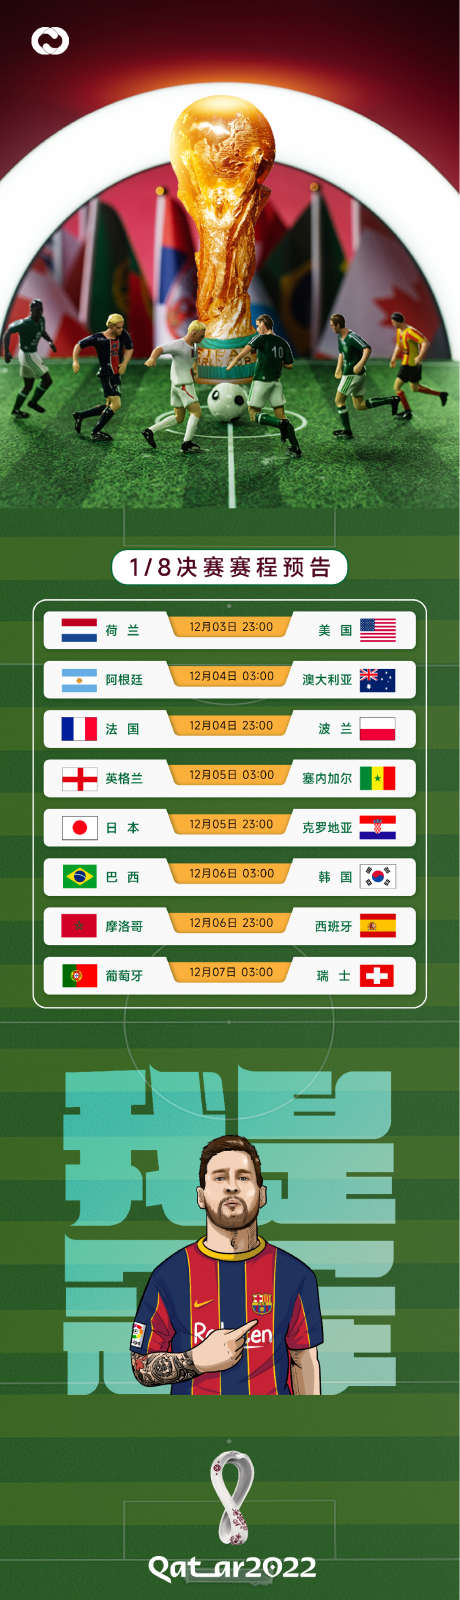 2022卡塔尔世界杯足球赛竞技海报_源文件下载_PSD格式_1088X3881像素-赛程,八分之一,足球,欧冠,足球杯,海报,竞技,足球赛,世界杯,卡塔尔,2022-作品编号:2022120411131254-源文件库-ywjfx.cn